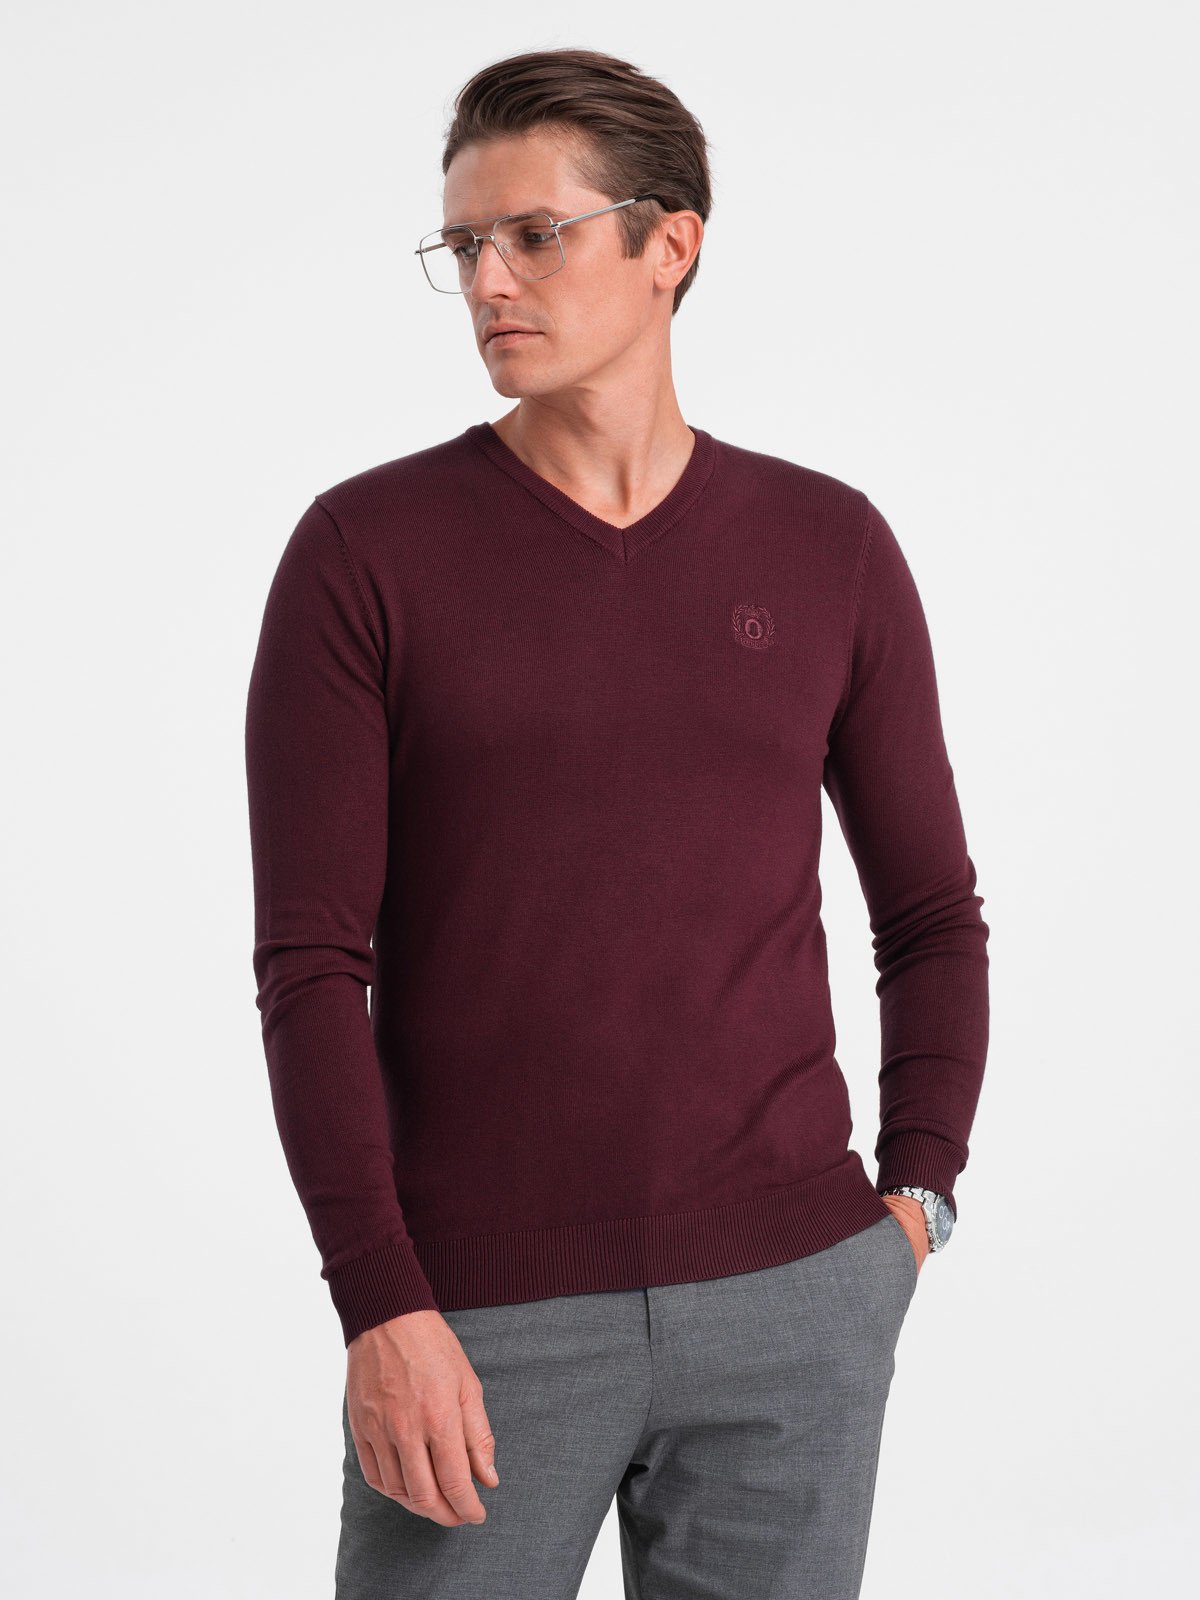 Elegant men's sweater with a v-neck - maroon V13 OM-SWBS V13 OM-SWBS - 0107